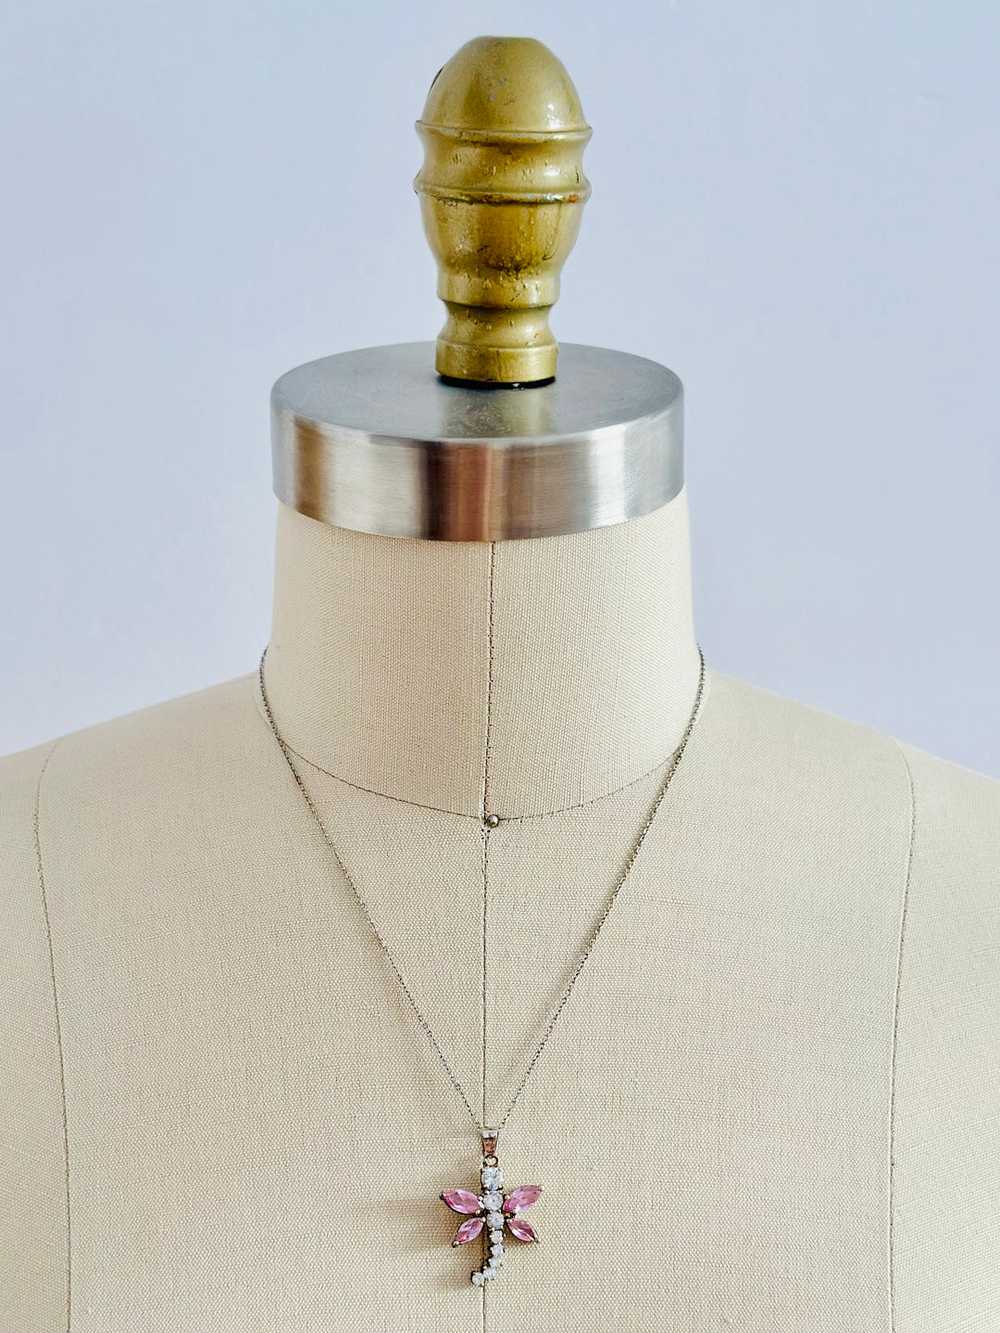 Vintage rhinestone dragonfly necklace - image 2